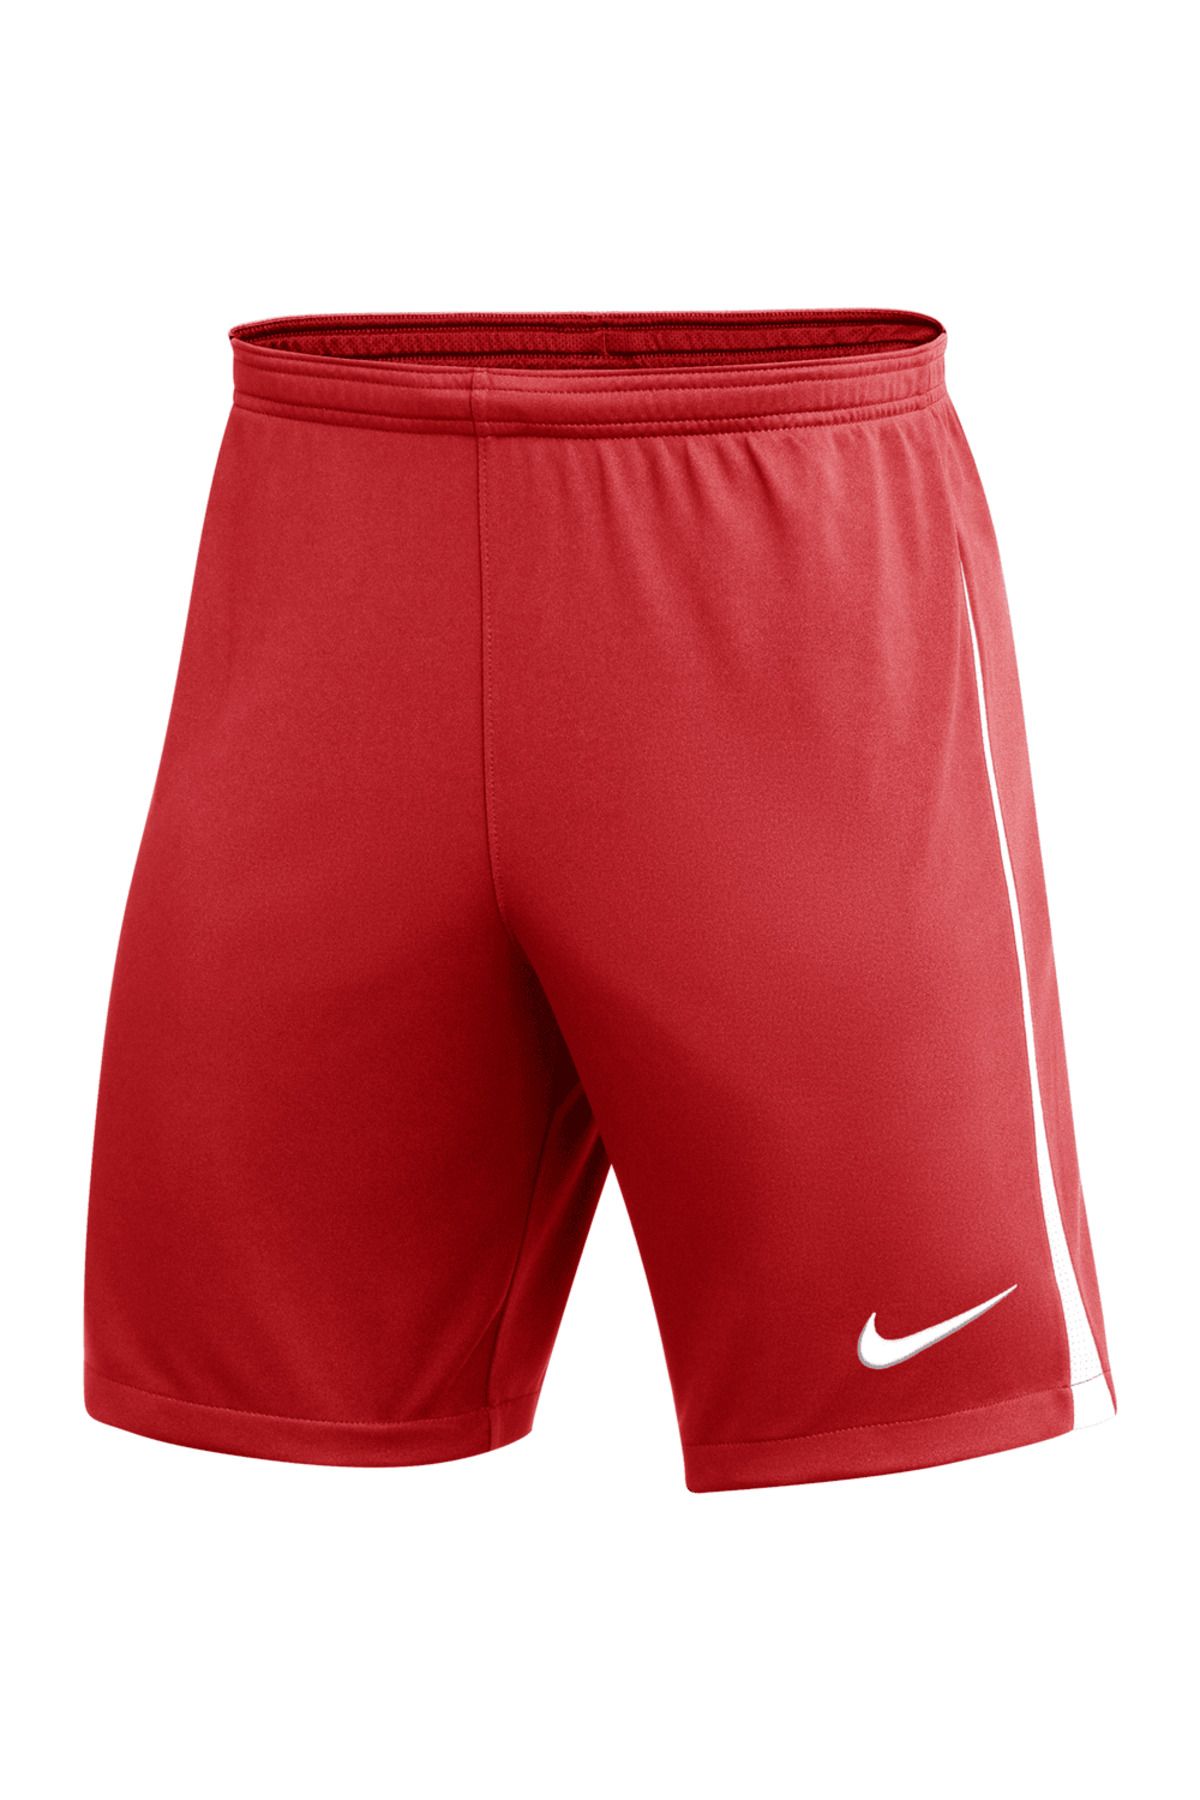 Nike Training Kırmızı Antrenman Şortu (Cepsiz)